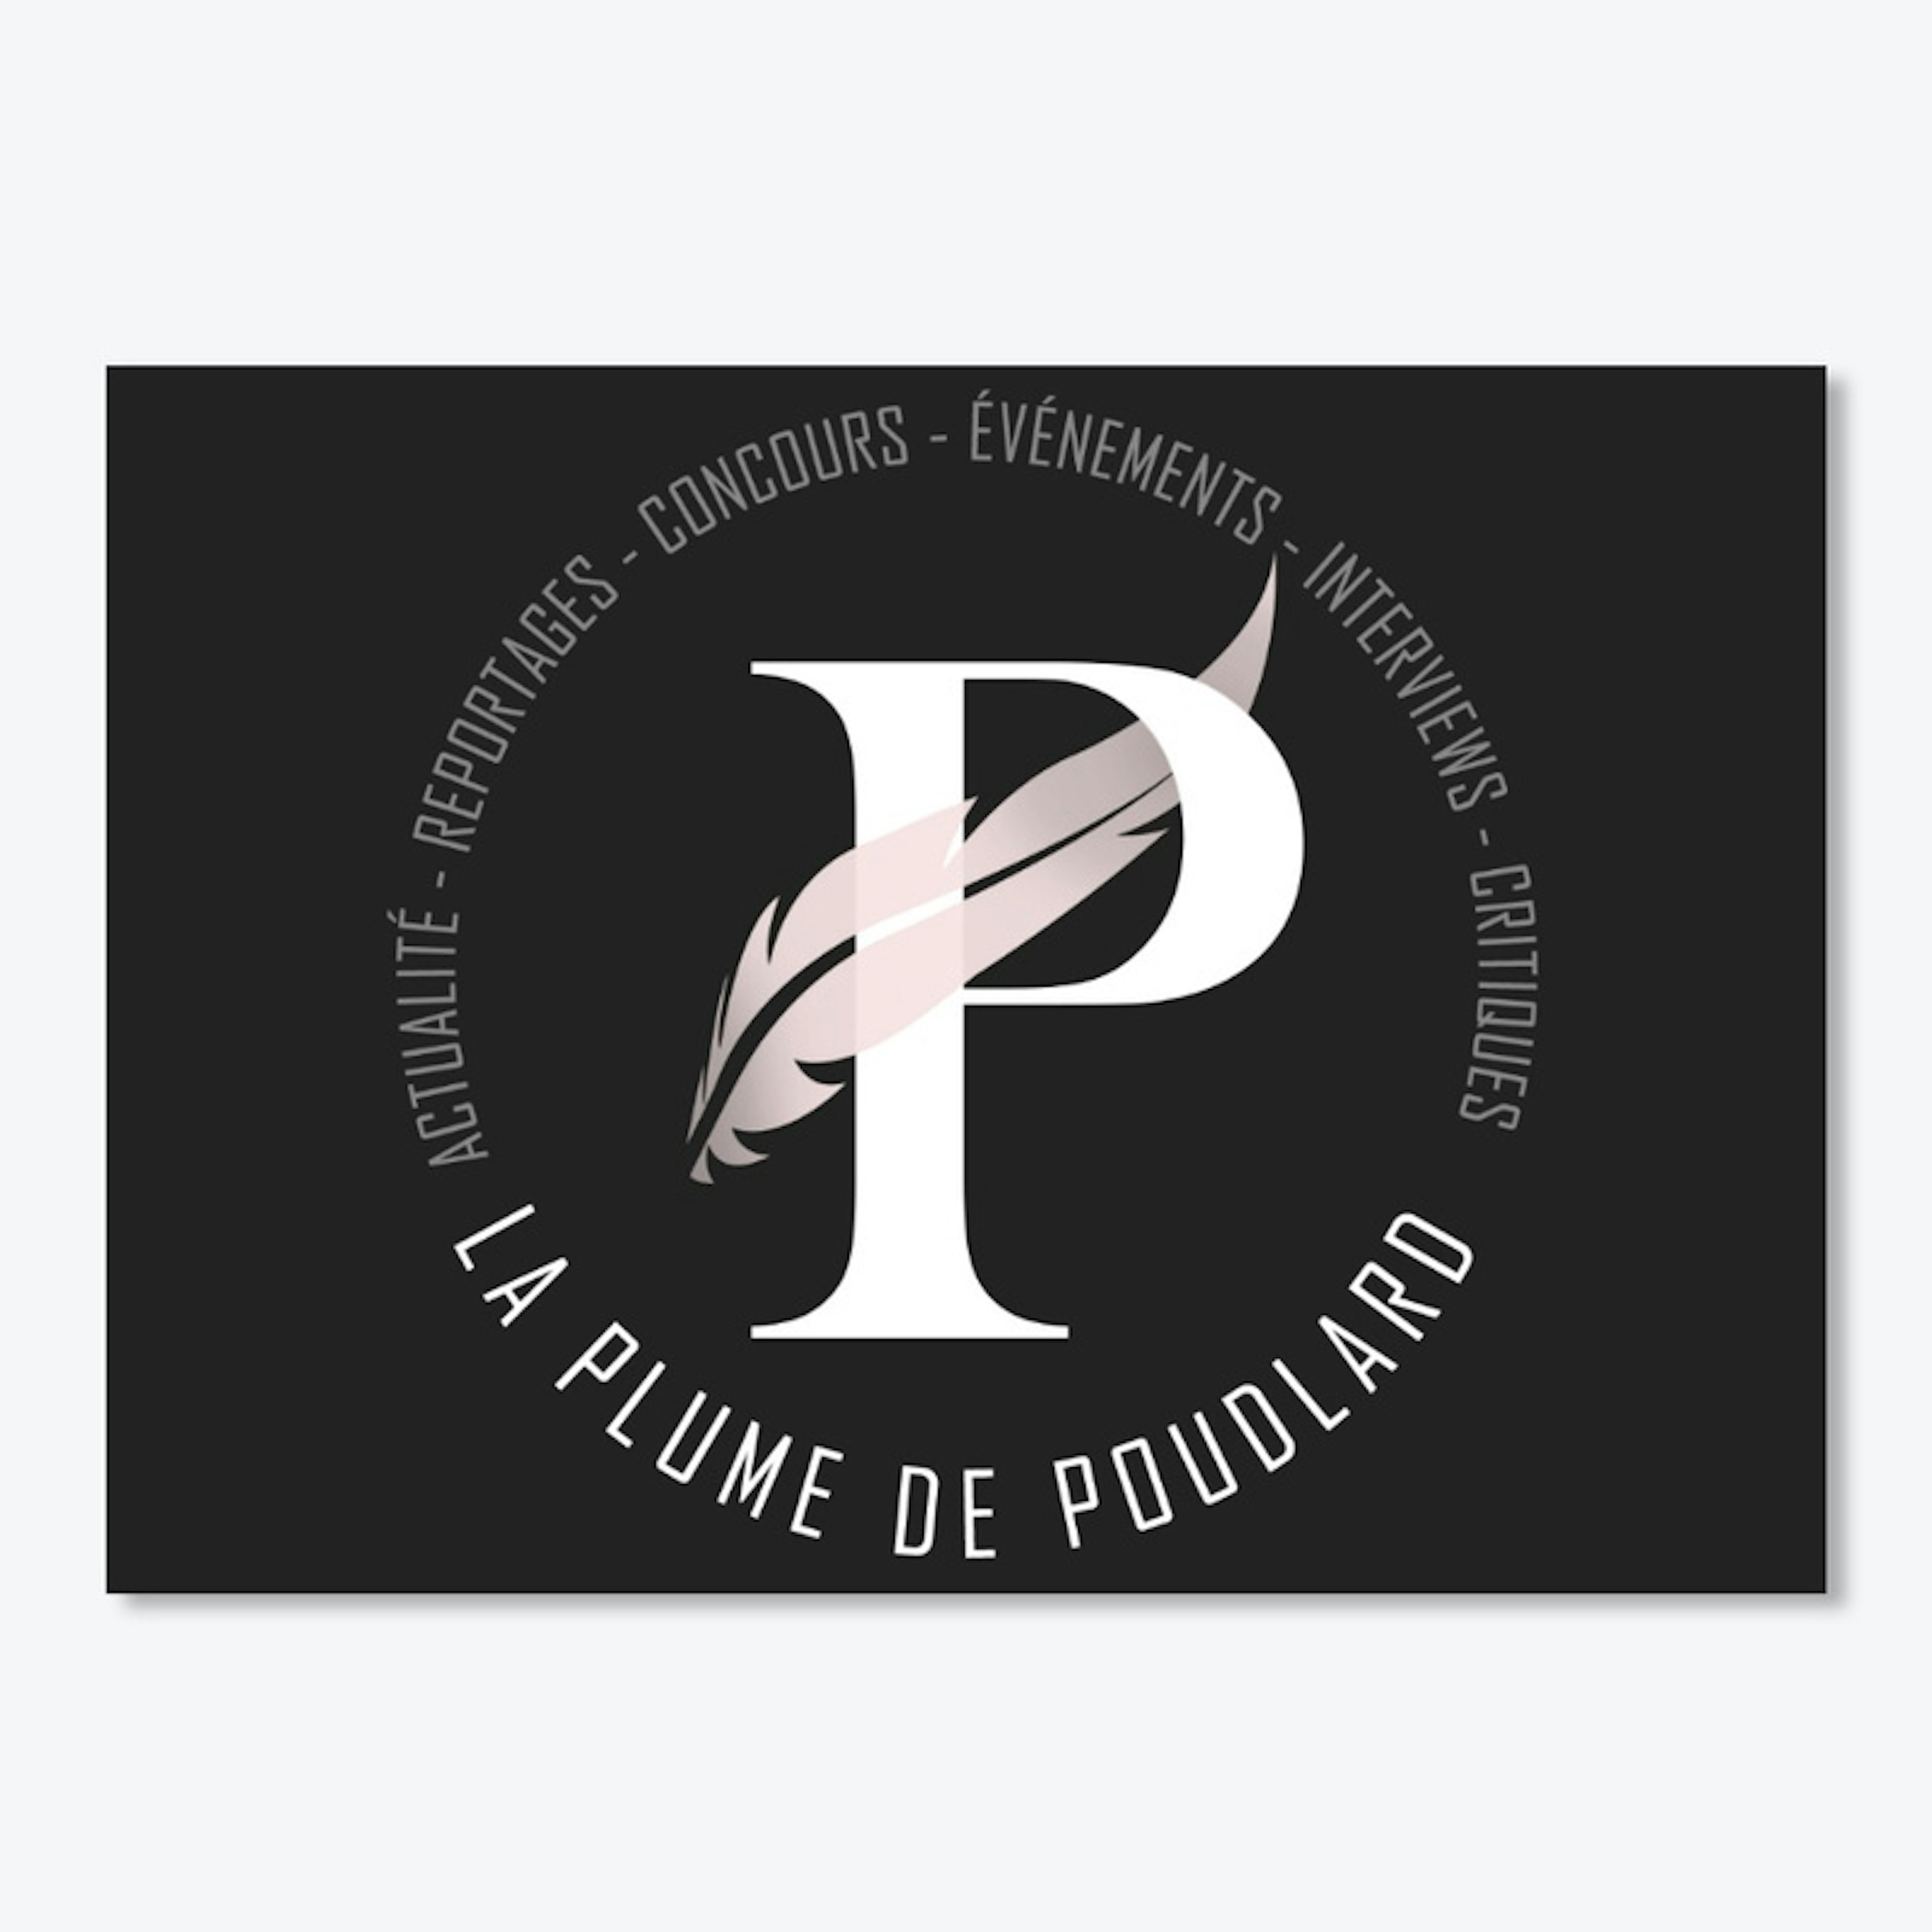 La Plume de Poudlard - circle logo